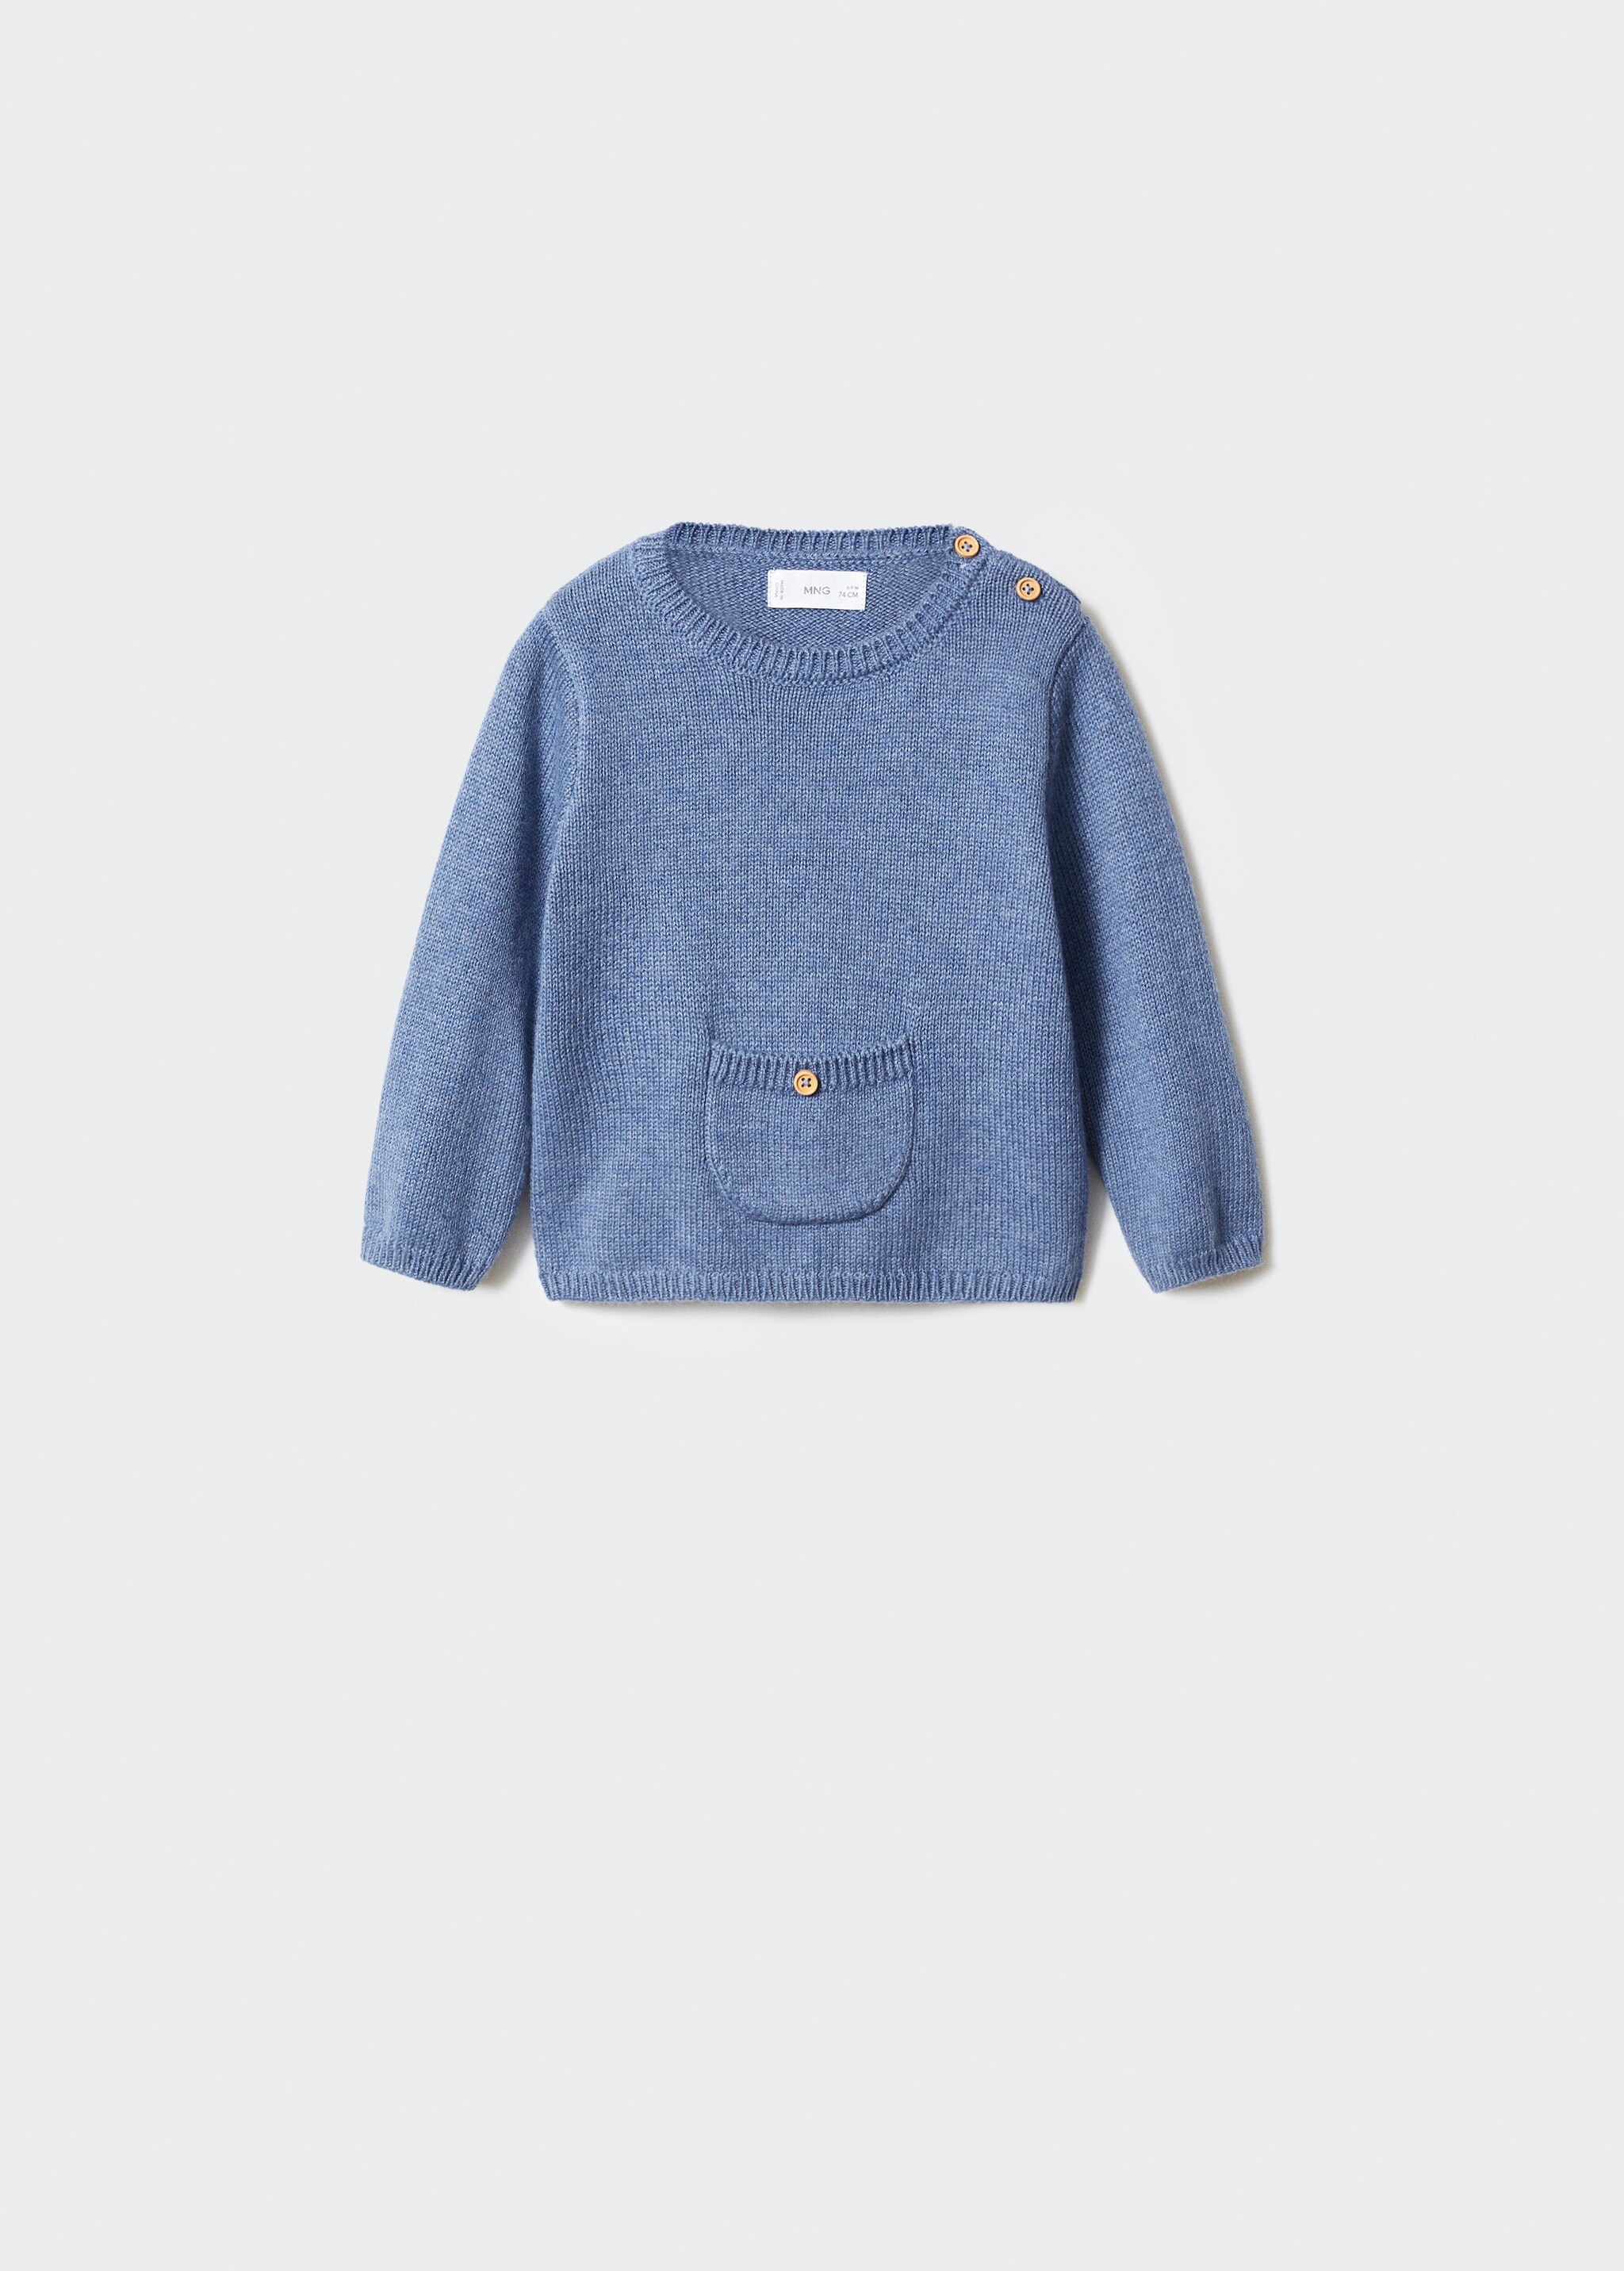 Mramorovaný bavlněný svetr - Zboží bez modelu